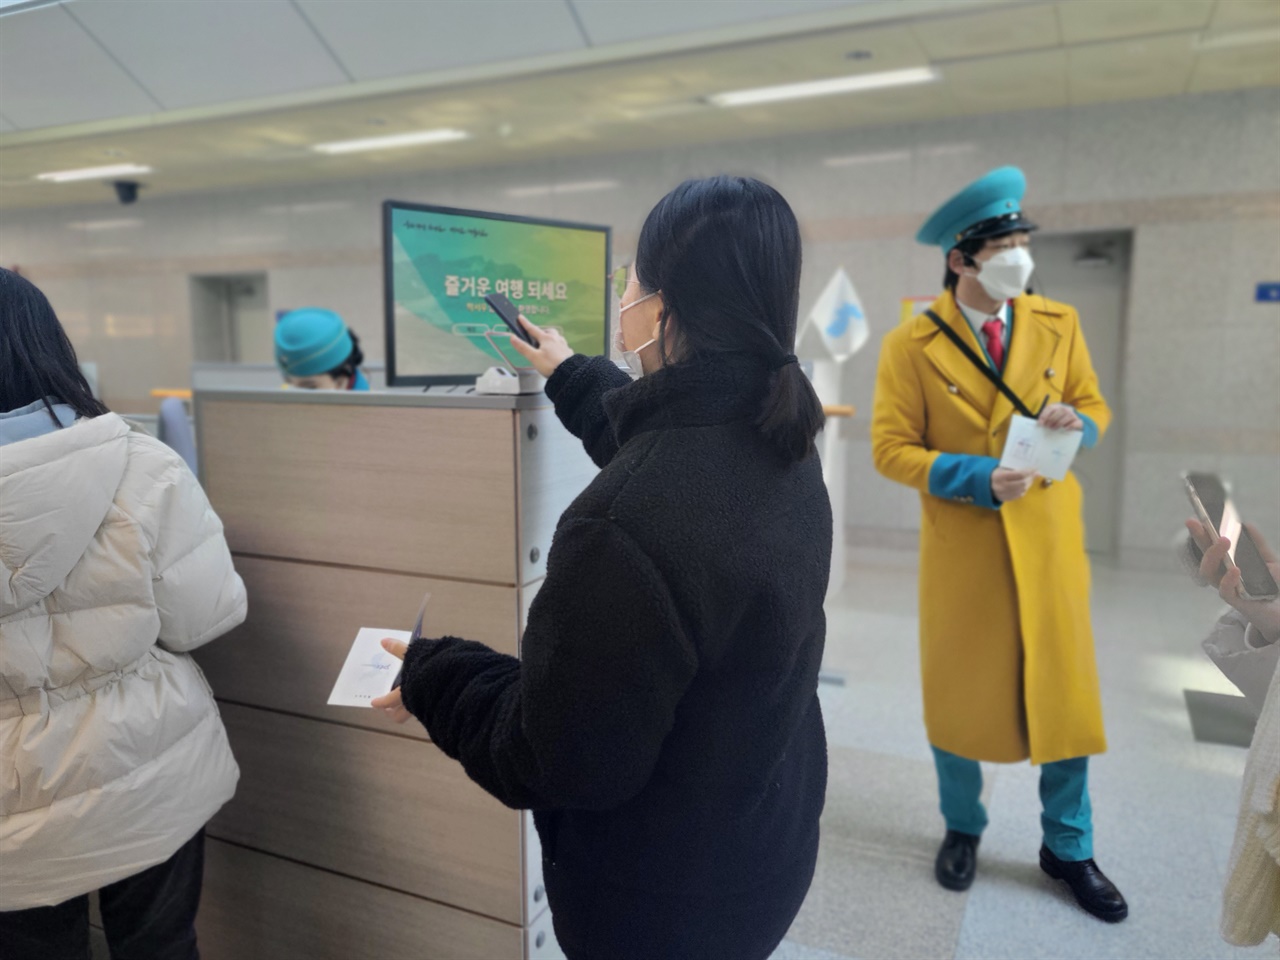 참가자들이 가상의 티켓을 통해 탑승수속을 밟고 있는 모습. 북한 안내원으로 분한 배우들의 모습이 인상적이다